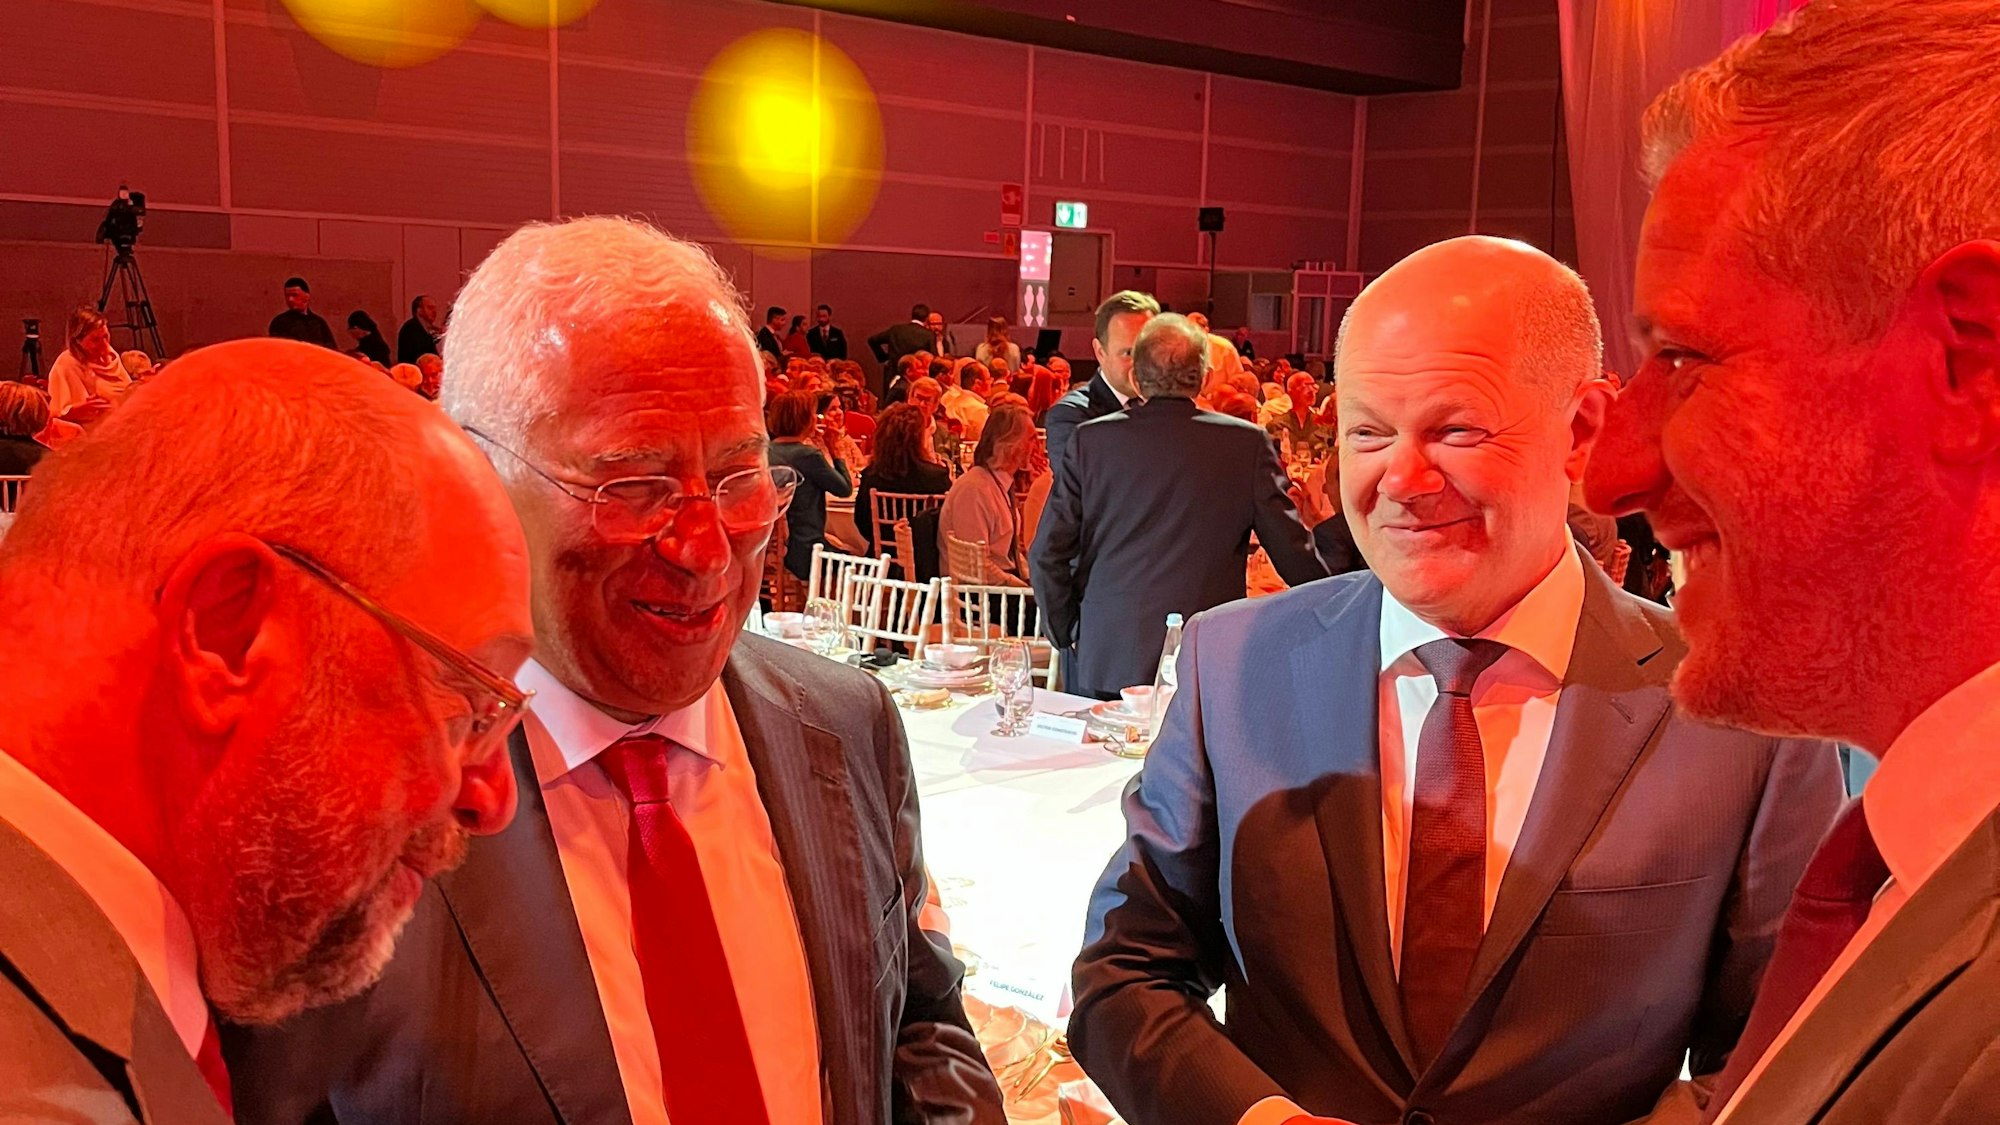 Euskirchens Landrat Markus Ramers (r.) war zur 50-Jahr-Feier der Partido Socialista in Portugal und traf dort neben Martin Schulz (l., Vorsitzender Friedrich-Ebert-Stiftung) und Bundeskanzler Olaf Scholz (2.v.r.) auf Portugals Premierminister António Costa.